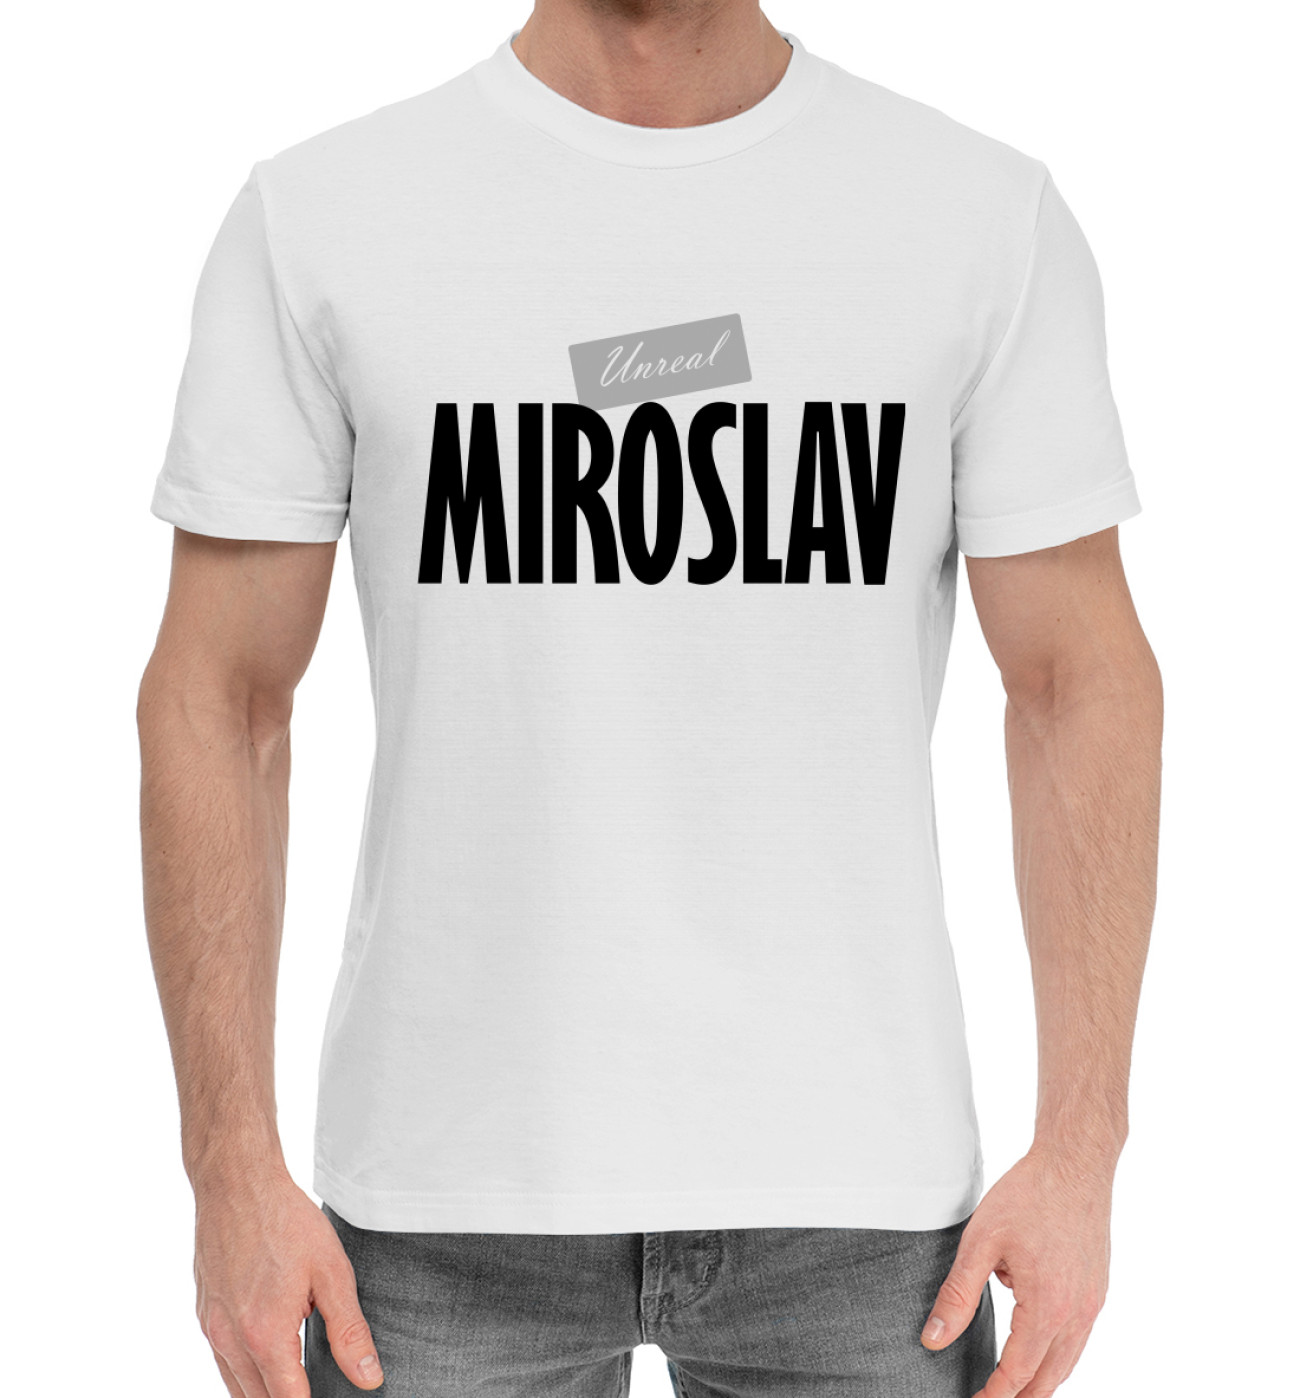 Мужская Хлопковая футболка Нереальный Мирослав, артикул: IMR-762377-hfu-2